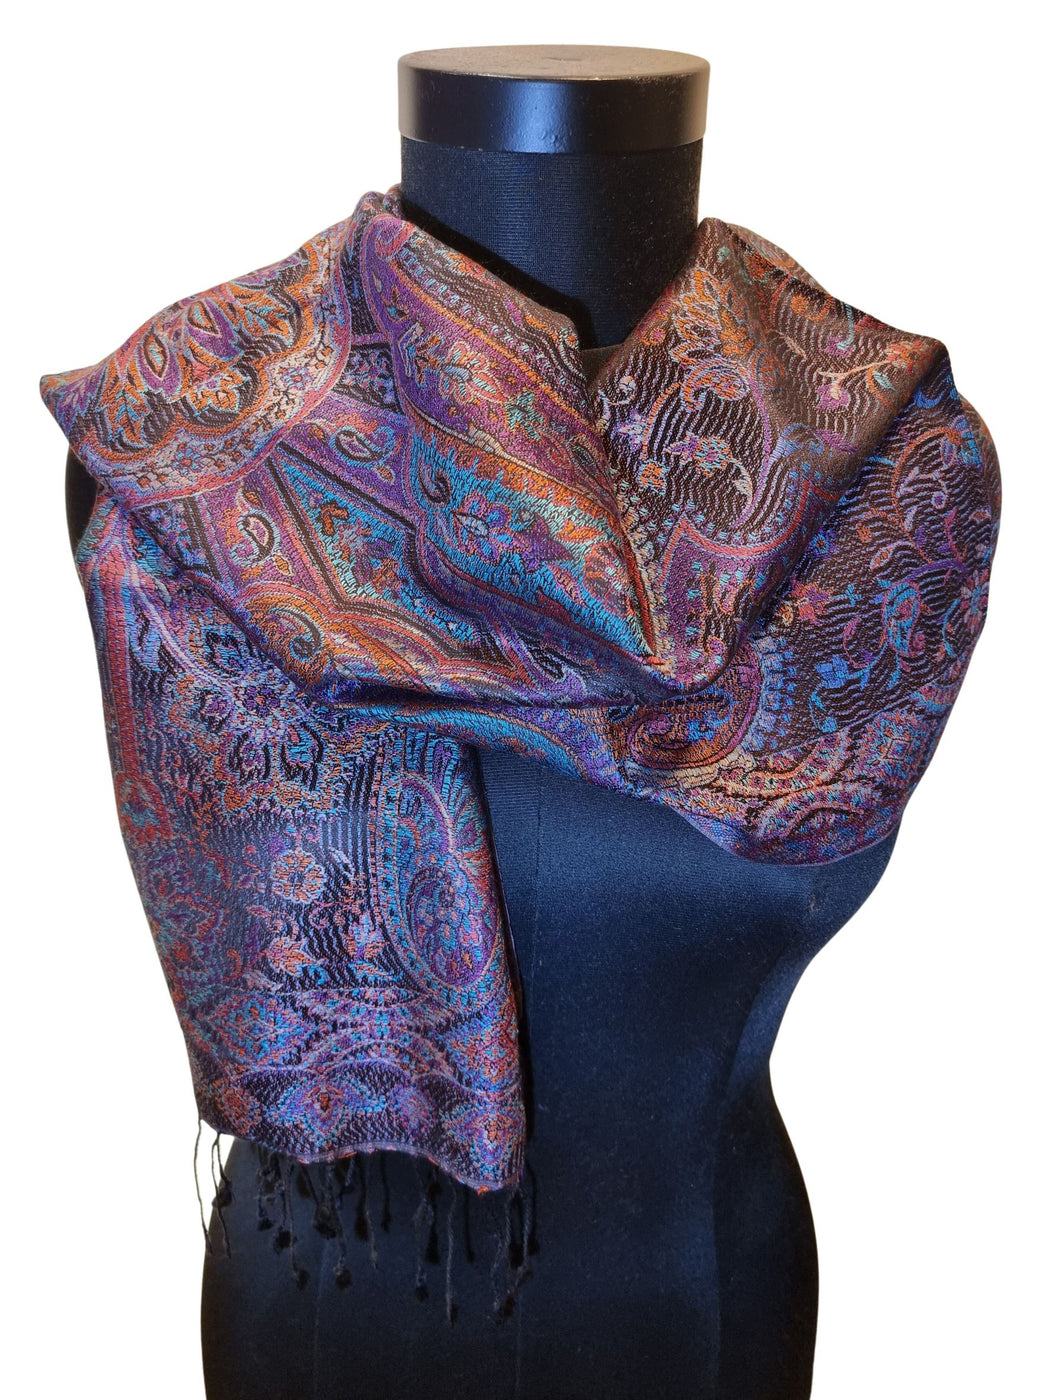 Mørkt silkeskjerf med et klassisk mønster i lilla, oransje, blått.... (24)